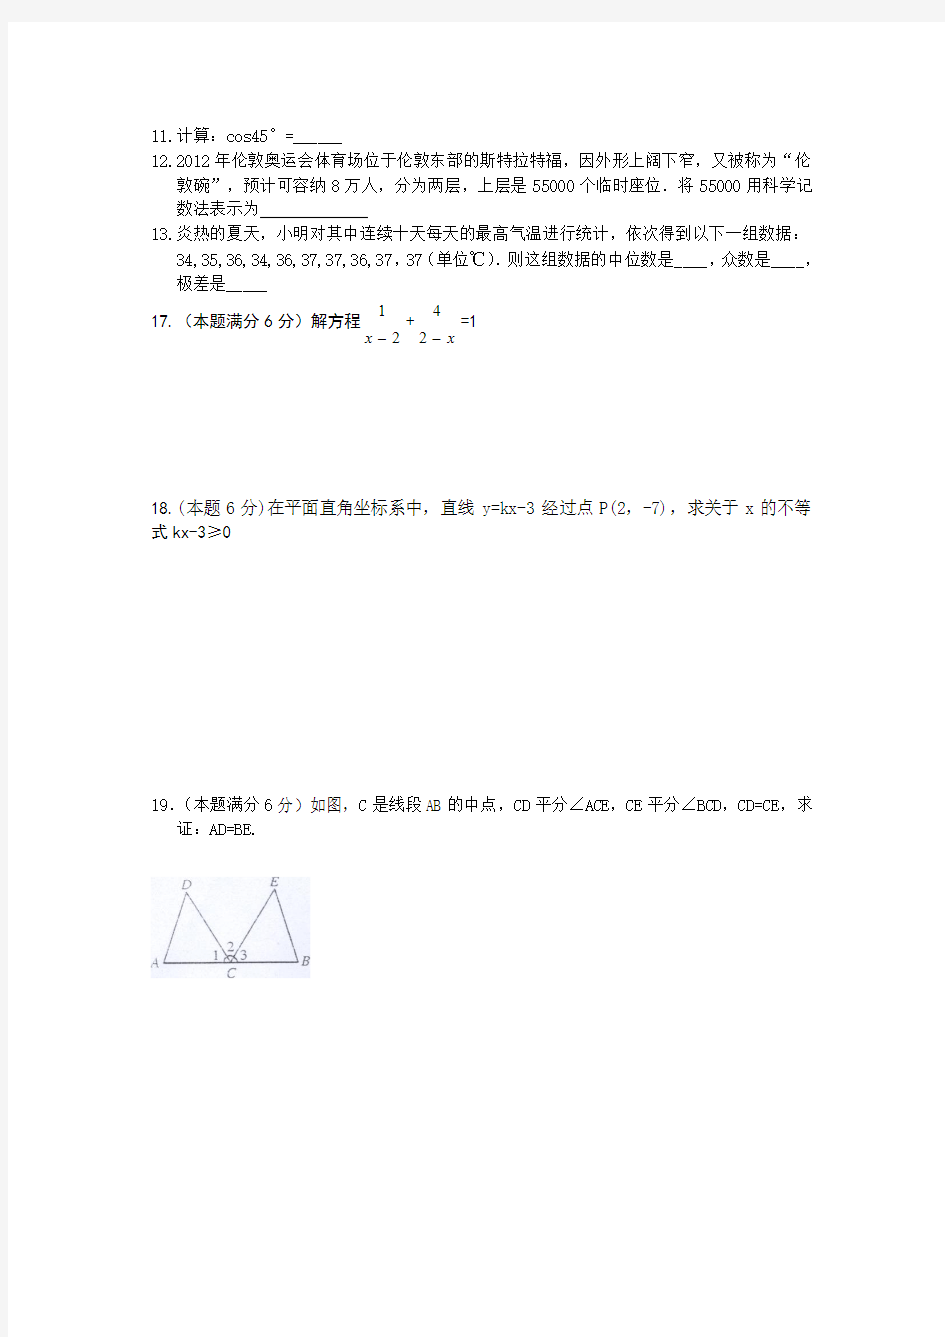 2013年武汉市中考数学模拟试卷(79分基础题)(五)